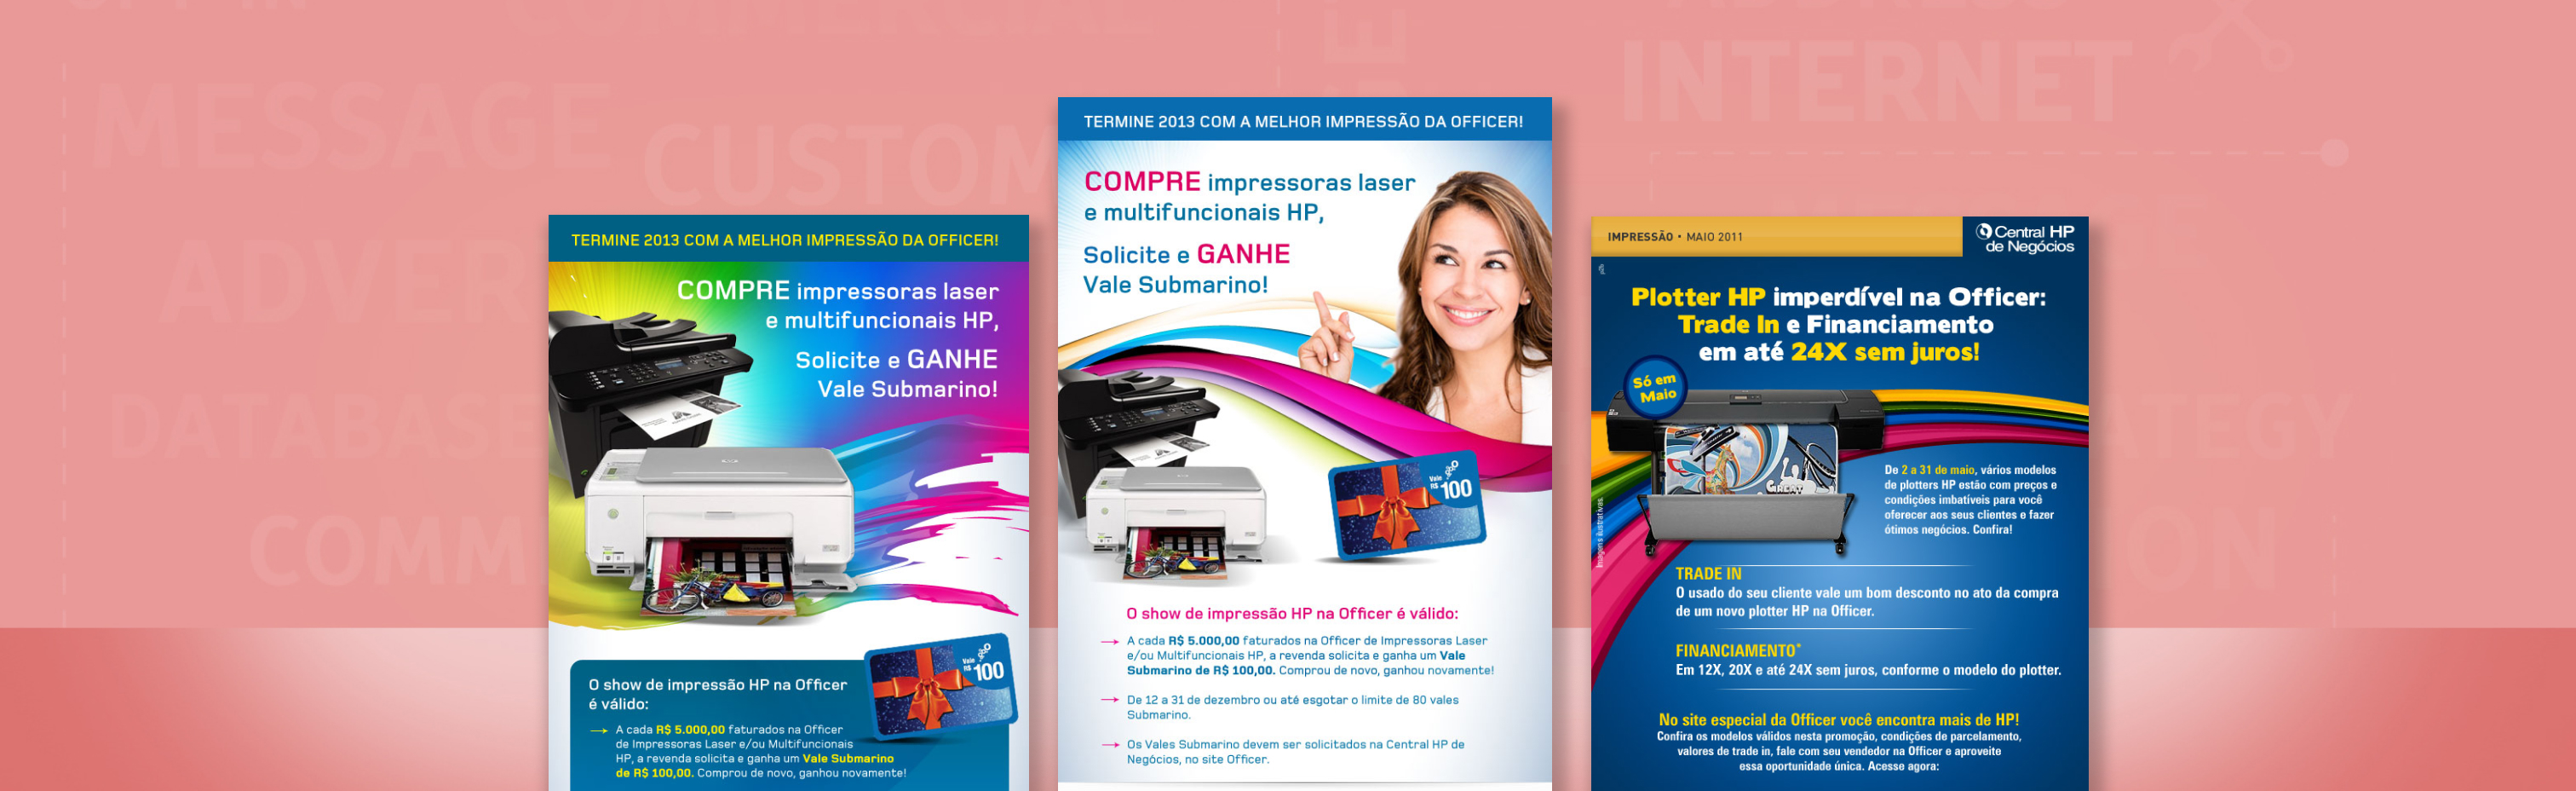 E-mail Marketing para venda de impressoras HP